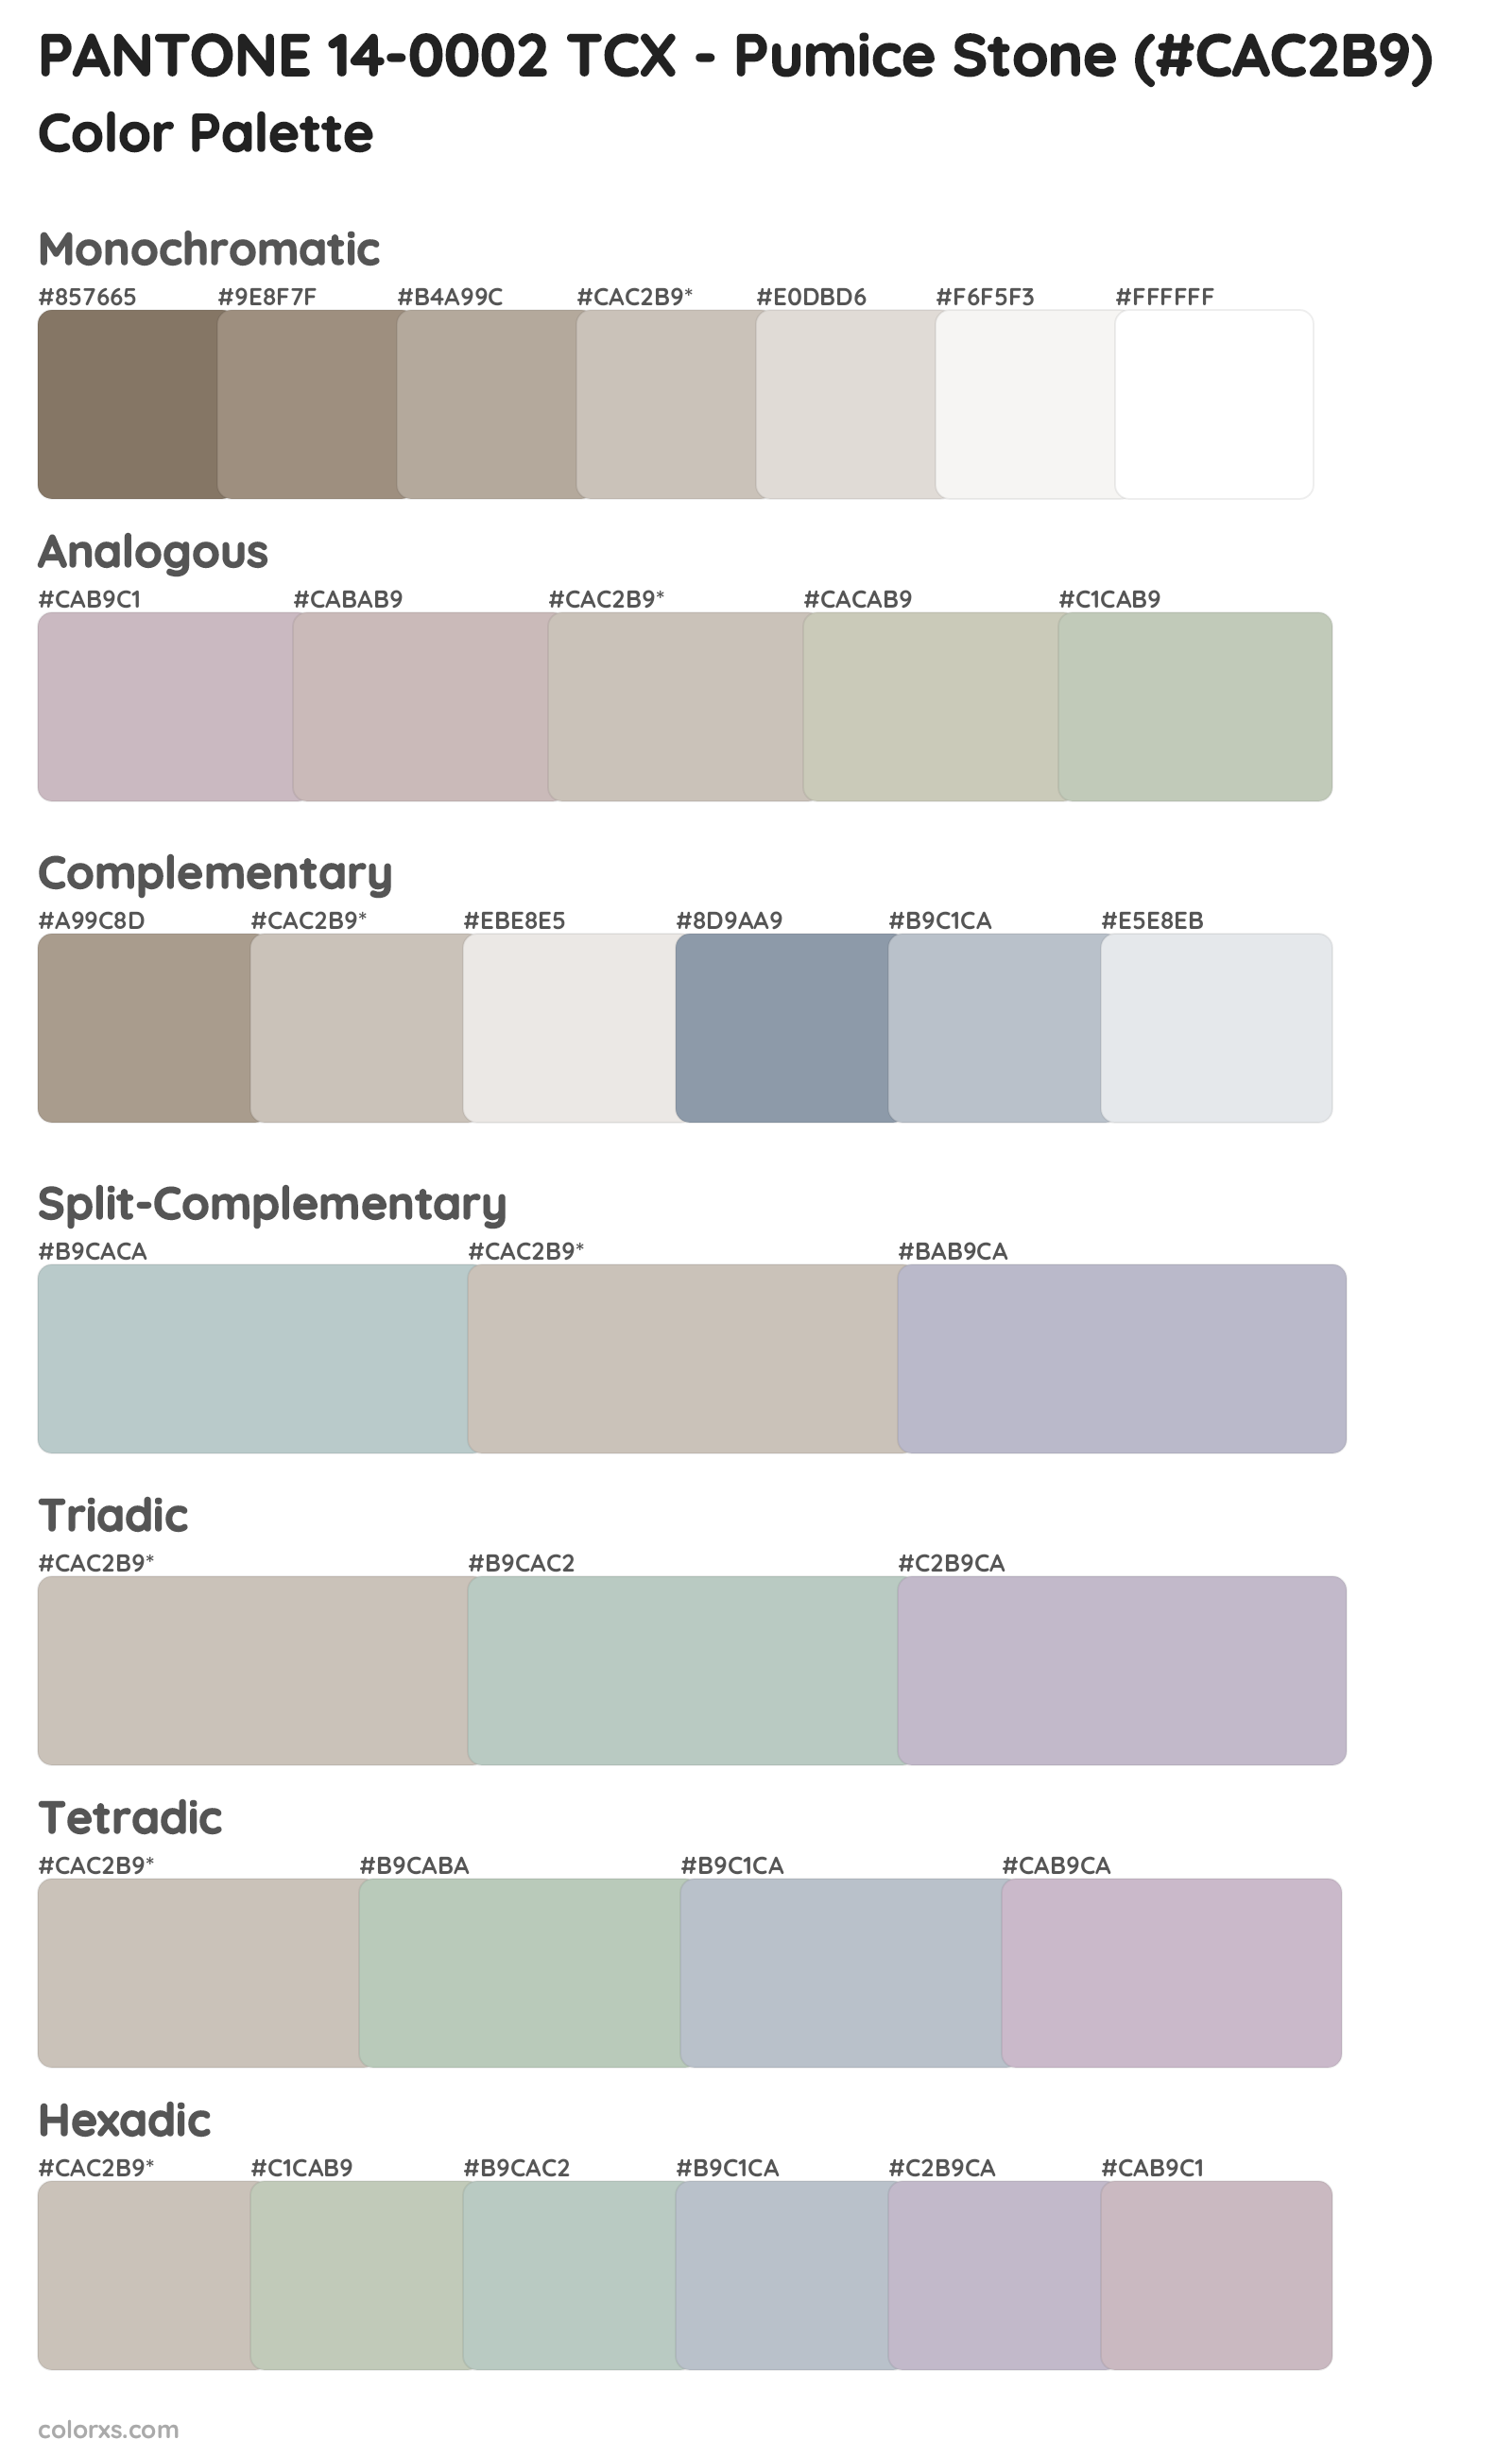 PANTONE 14-0002 TCX - Pumice Stone Color Scheme Palettes